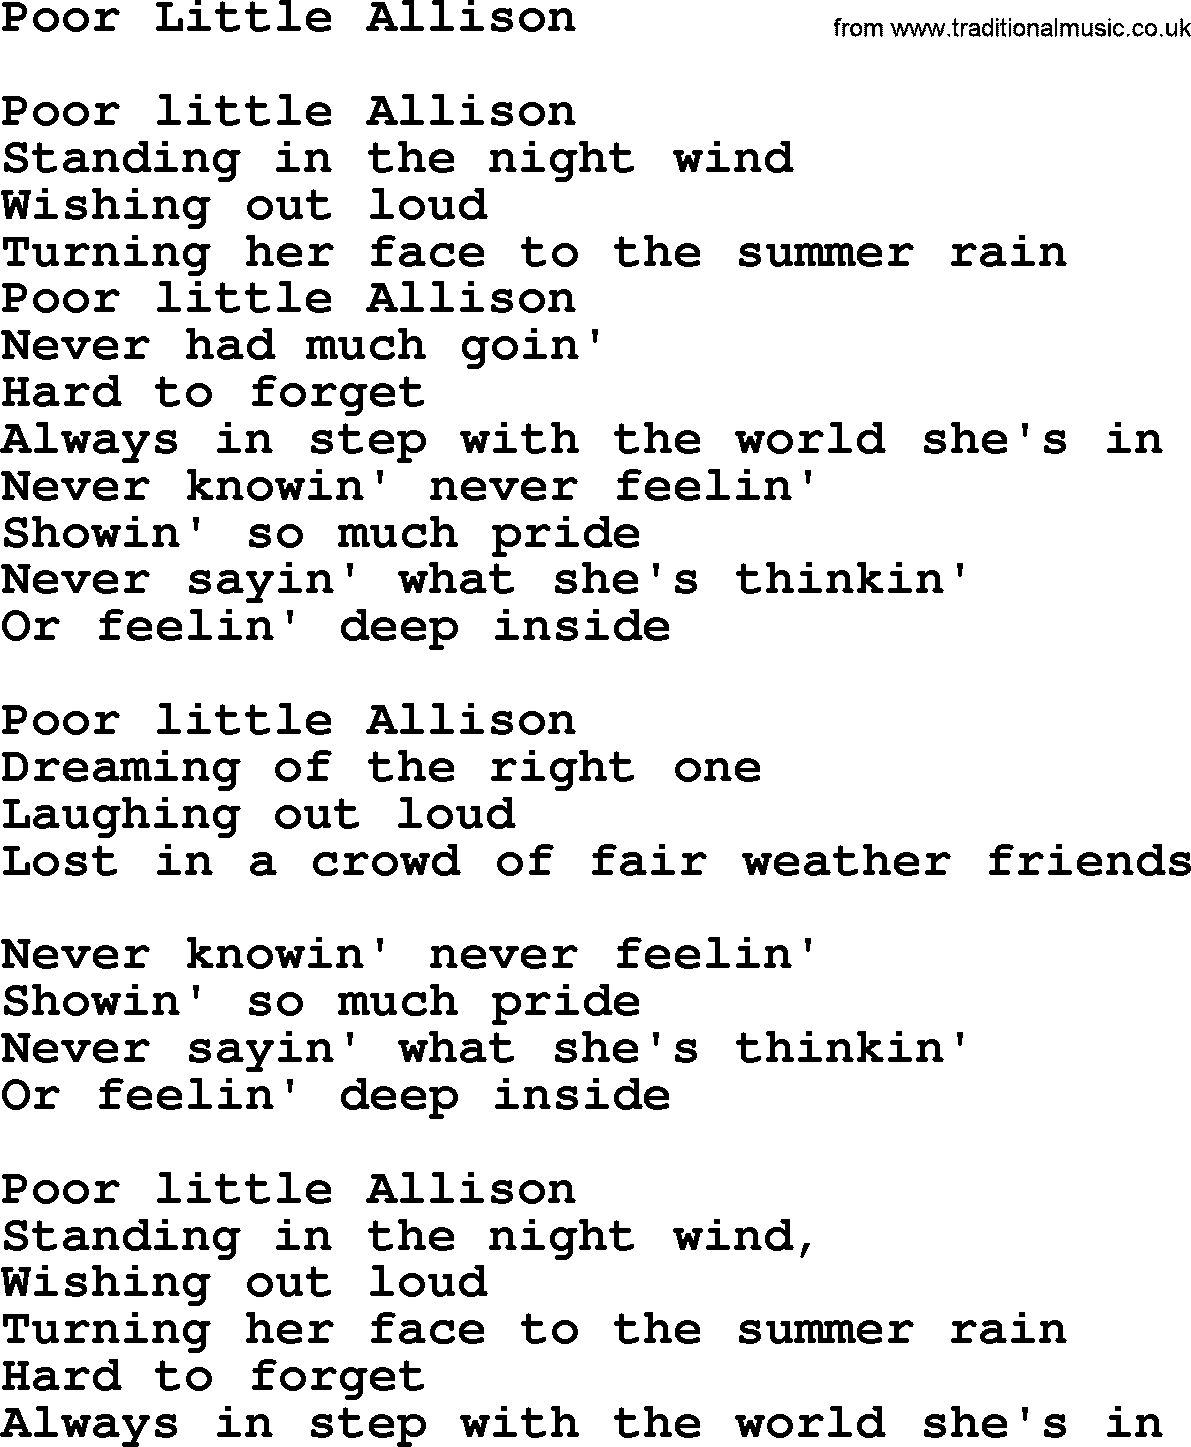 Gordon Lightfoot song Poor Little Allison, lyrics